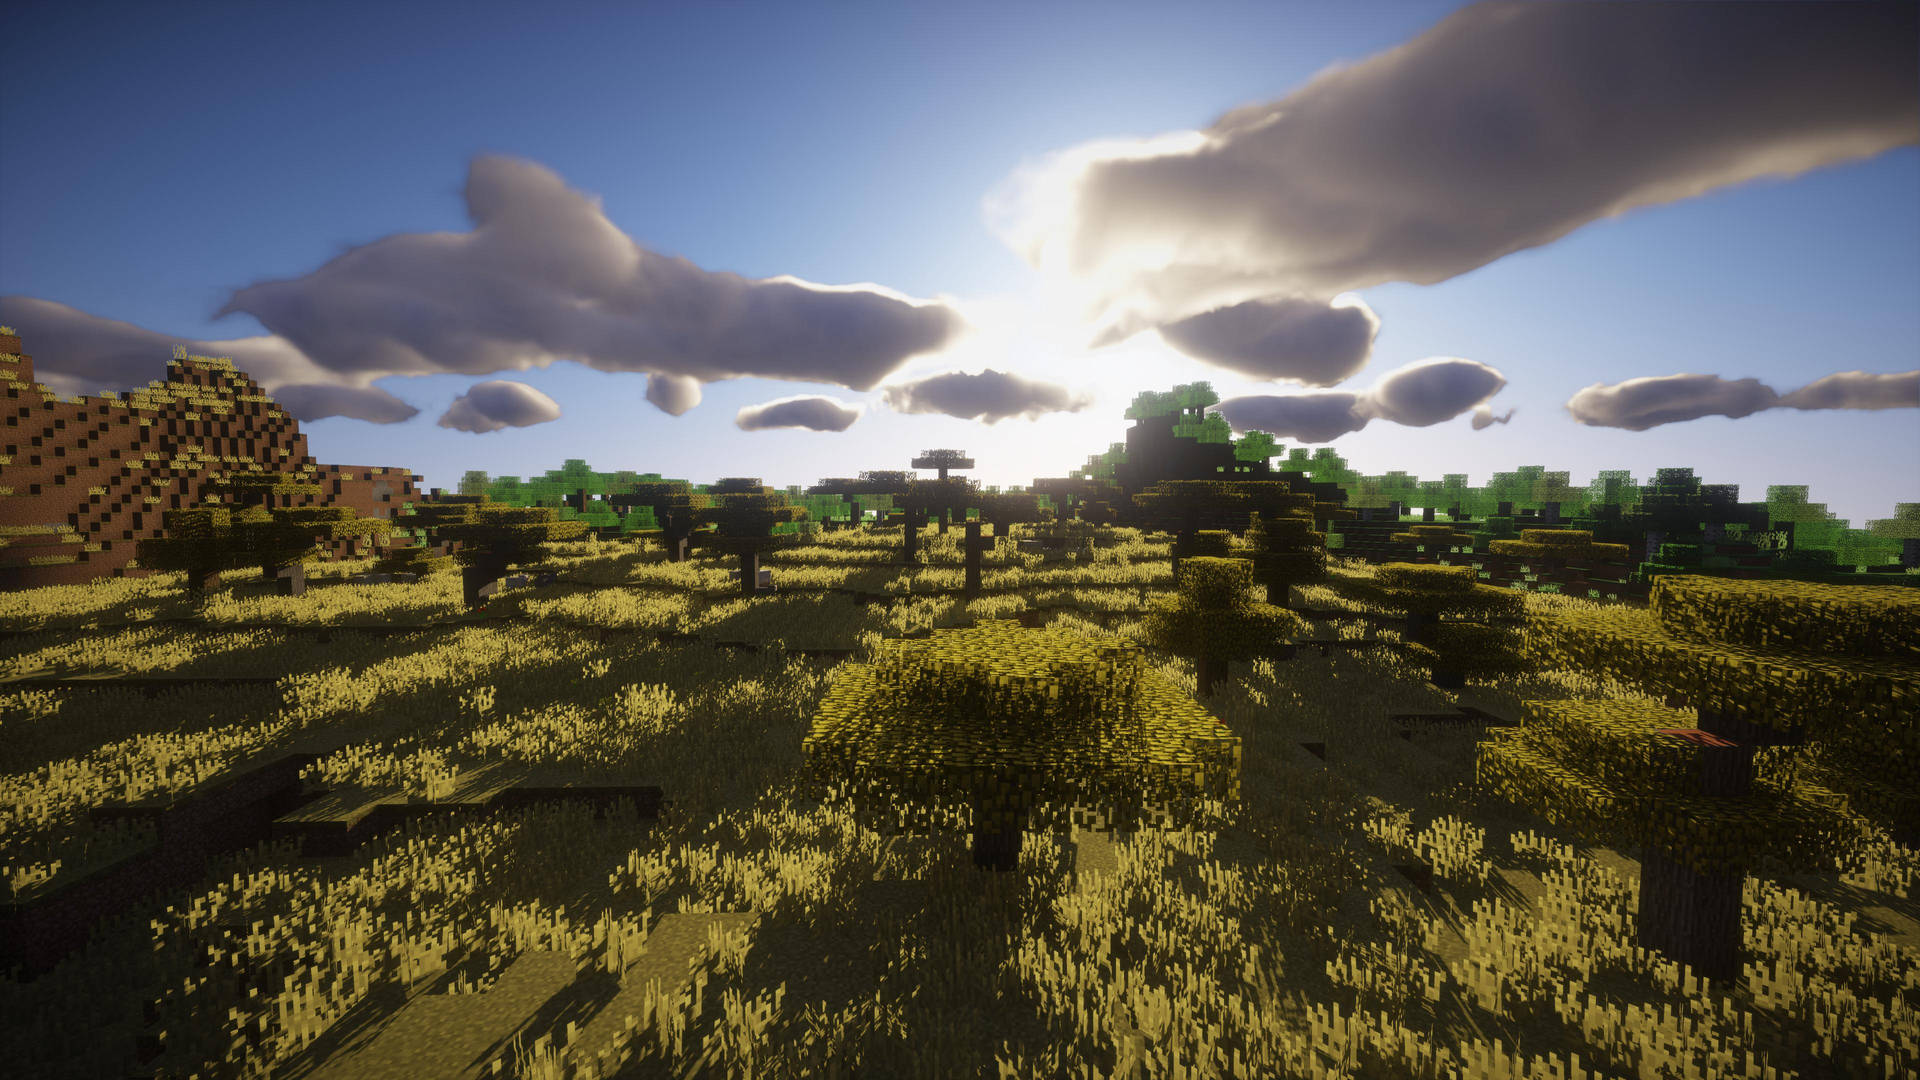 4k Minecraft Plethora Of Trees